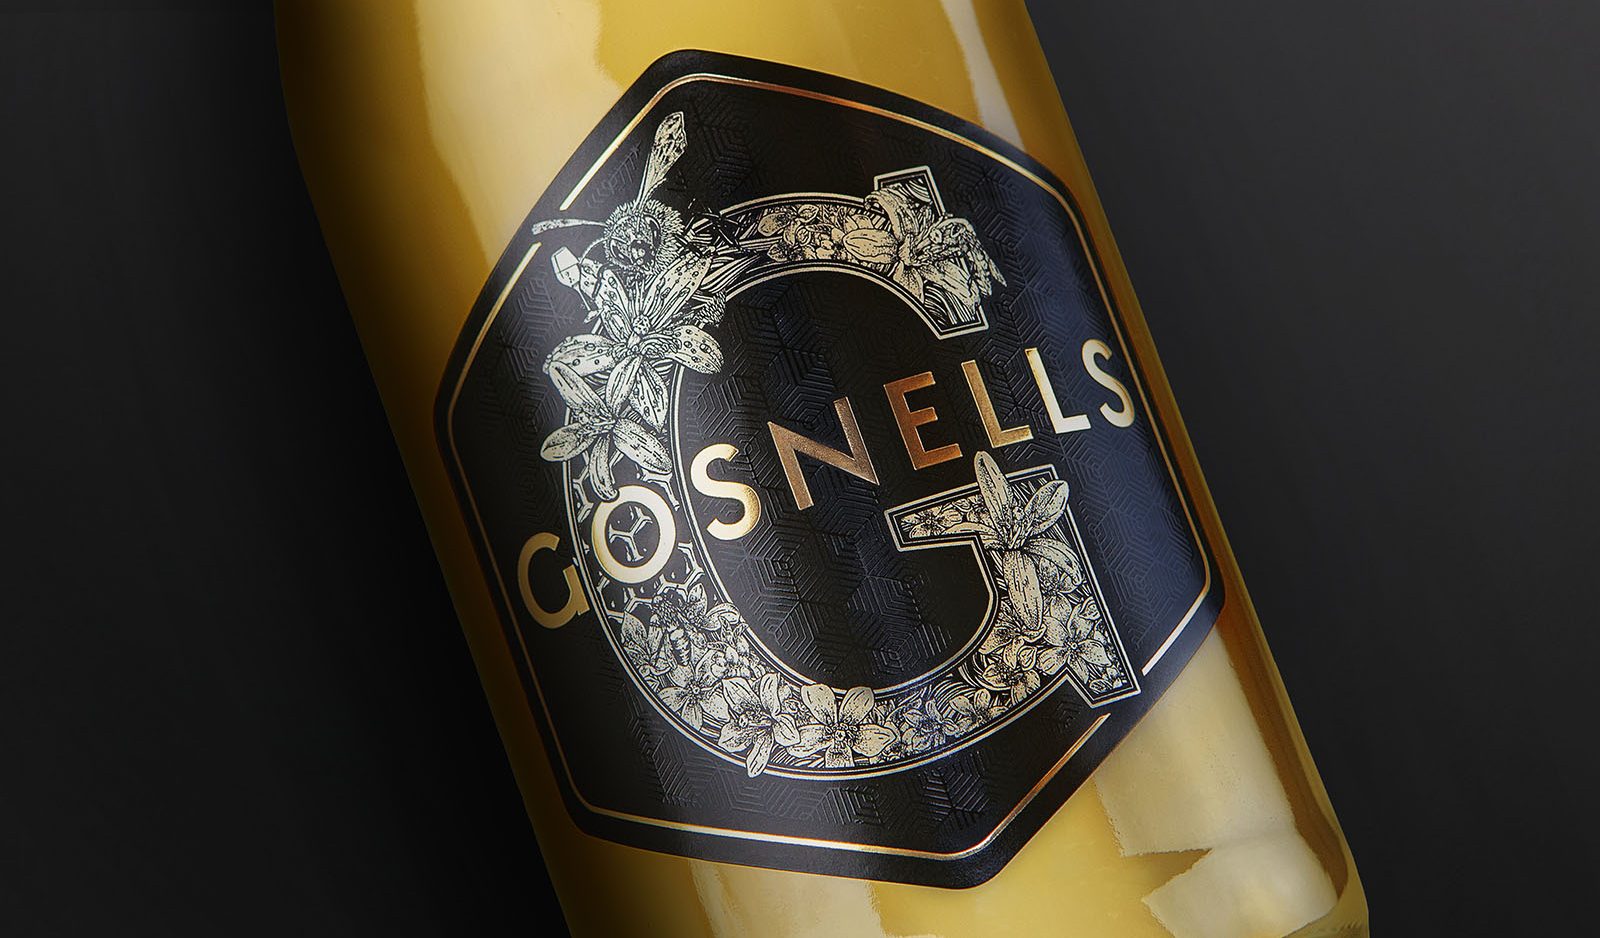 GOSNELLS Bottle Label